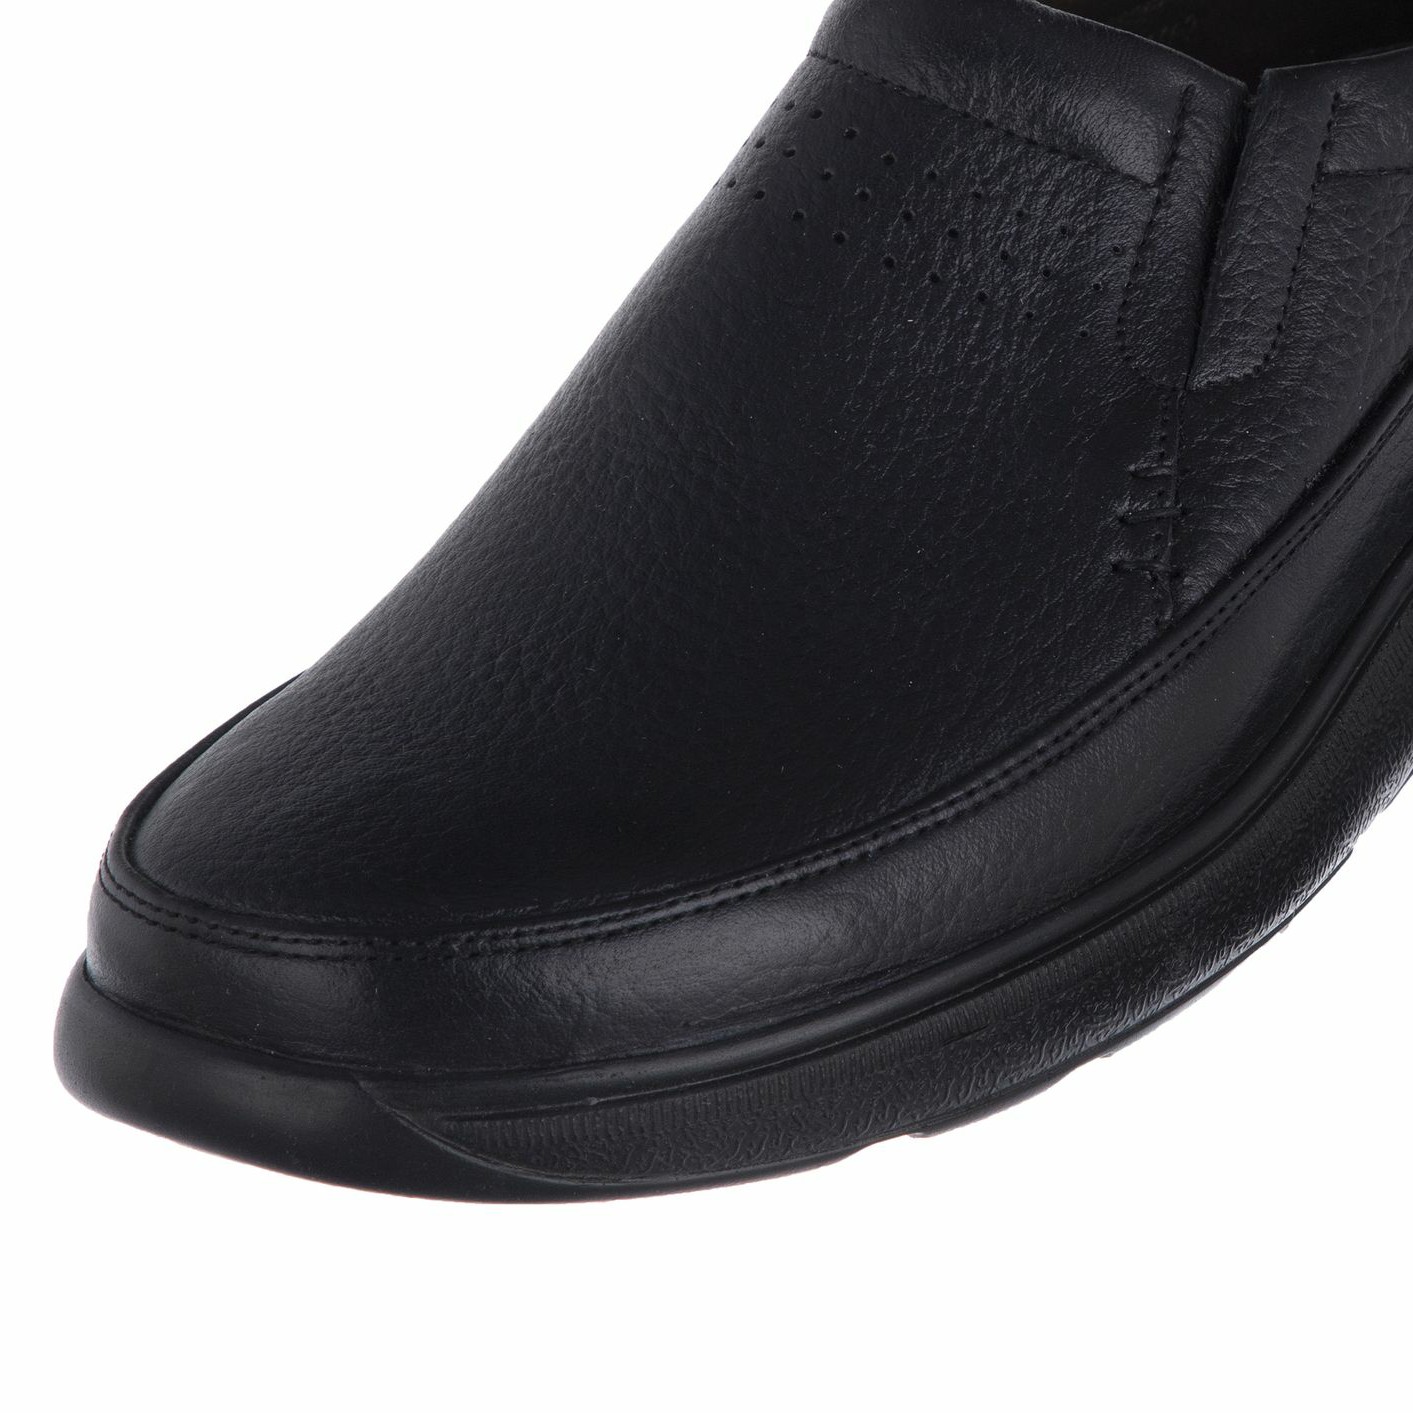 کفش روزمره مردانه دلفارد مدل چرم طبیعی کد D503101 -  - 3